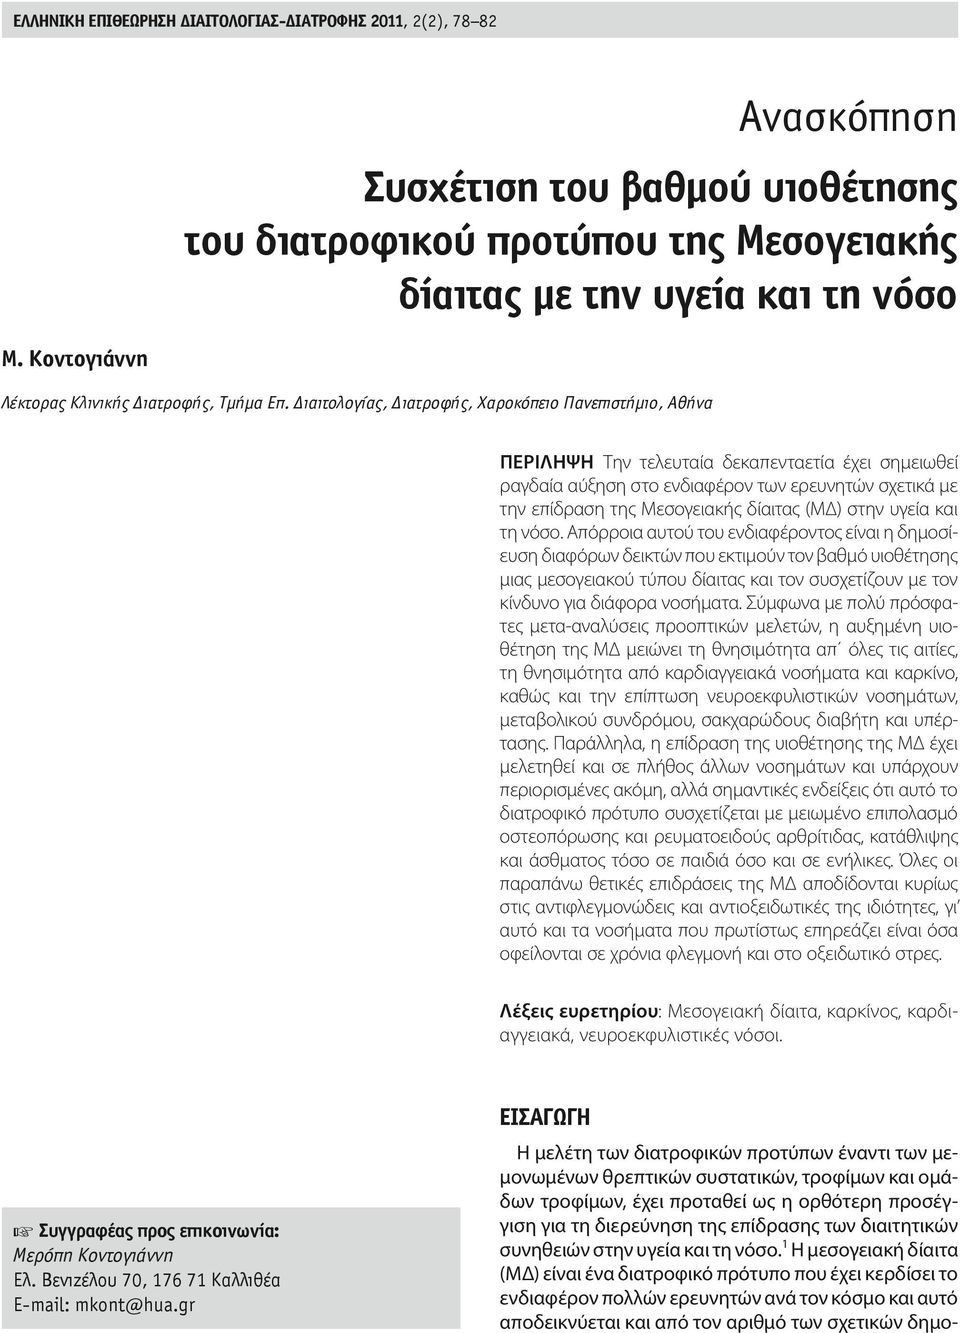 Διαιτολογίας, Διατροφής, Χαροκόπειο Πανεπιστήμιο, Αθήνα περιληψη Την τελευταία δεκαπενταετία έχει σημειωθεί ραγδαία αύξηση στο ενδιαφέρον των ερευνητών σχετικά με την επίδραση της Μεσογειακής δίαιτας